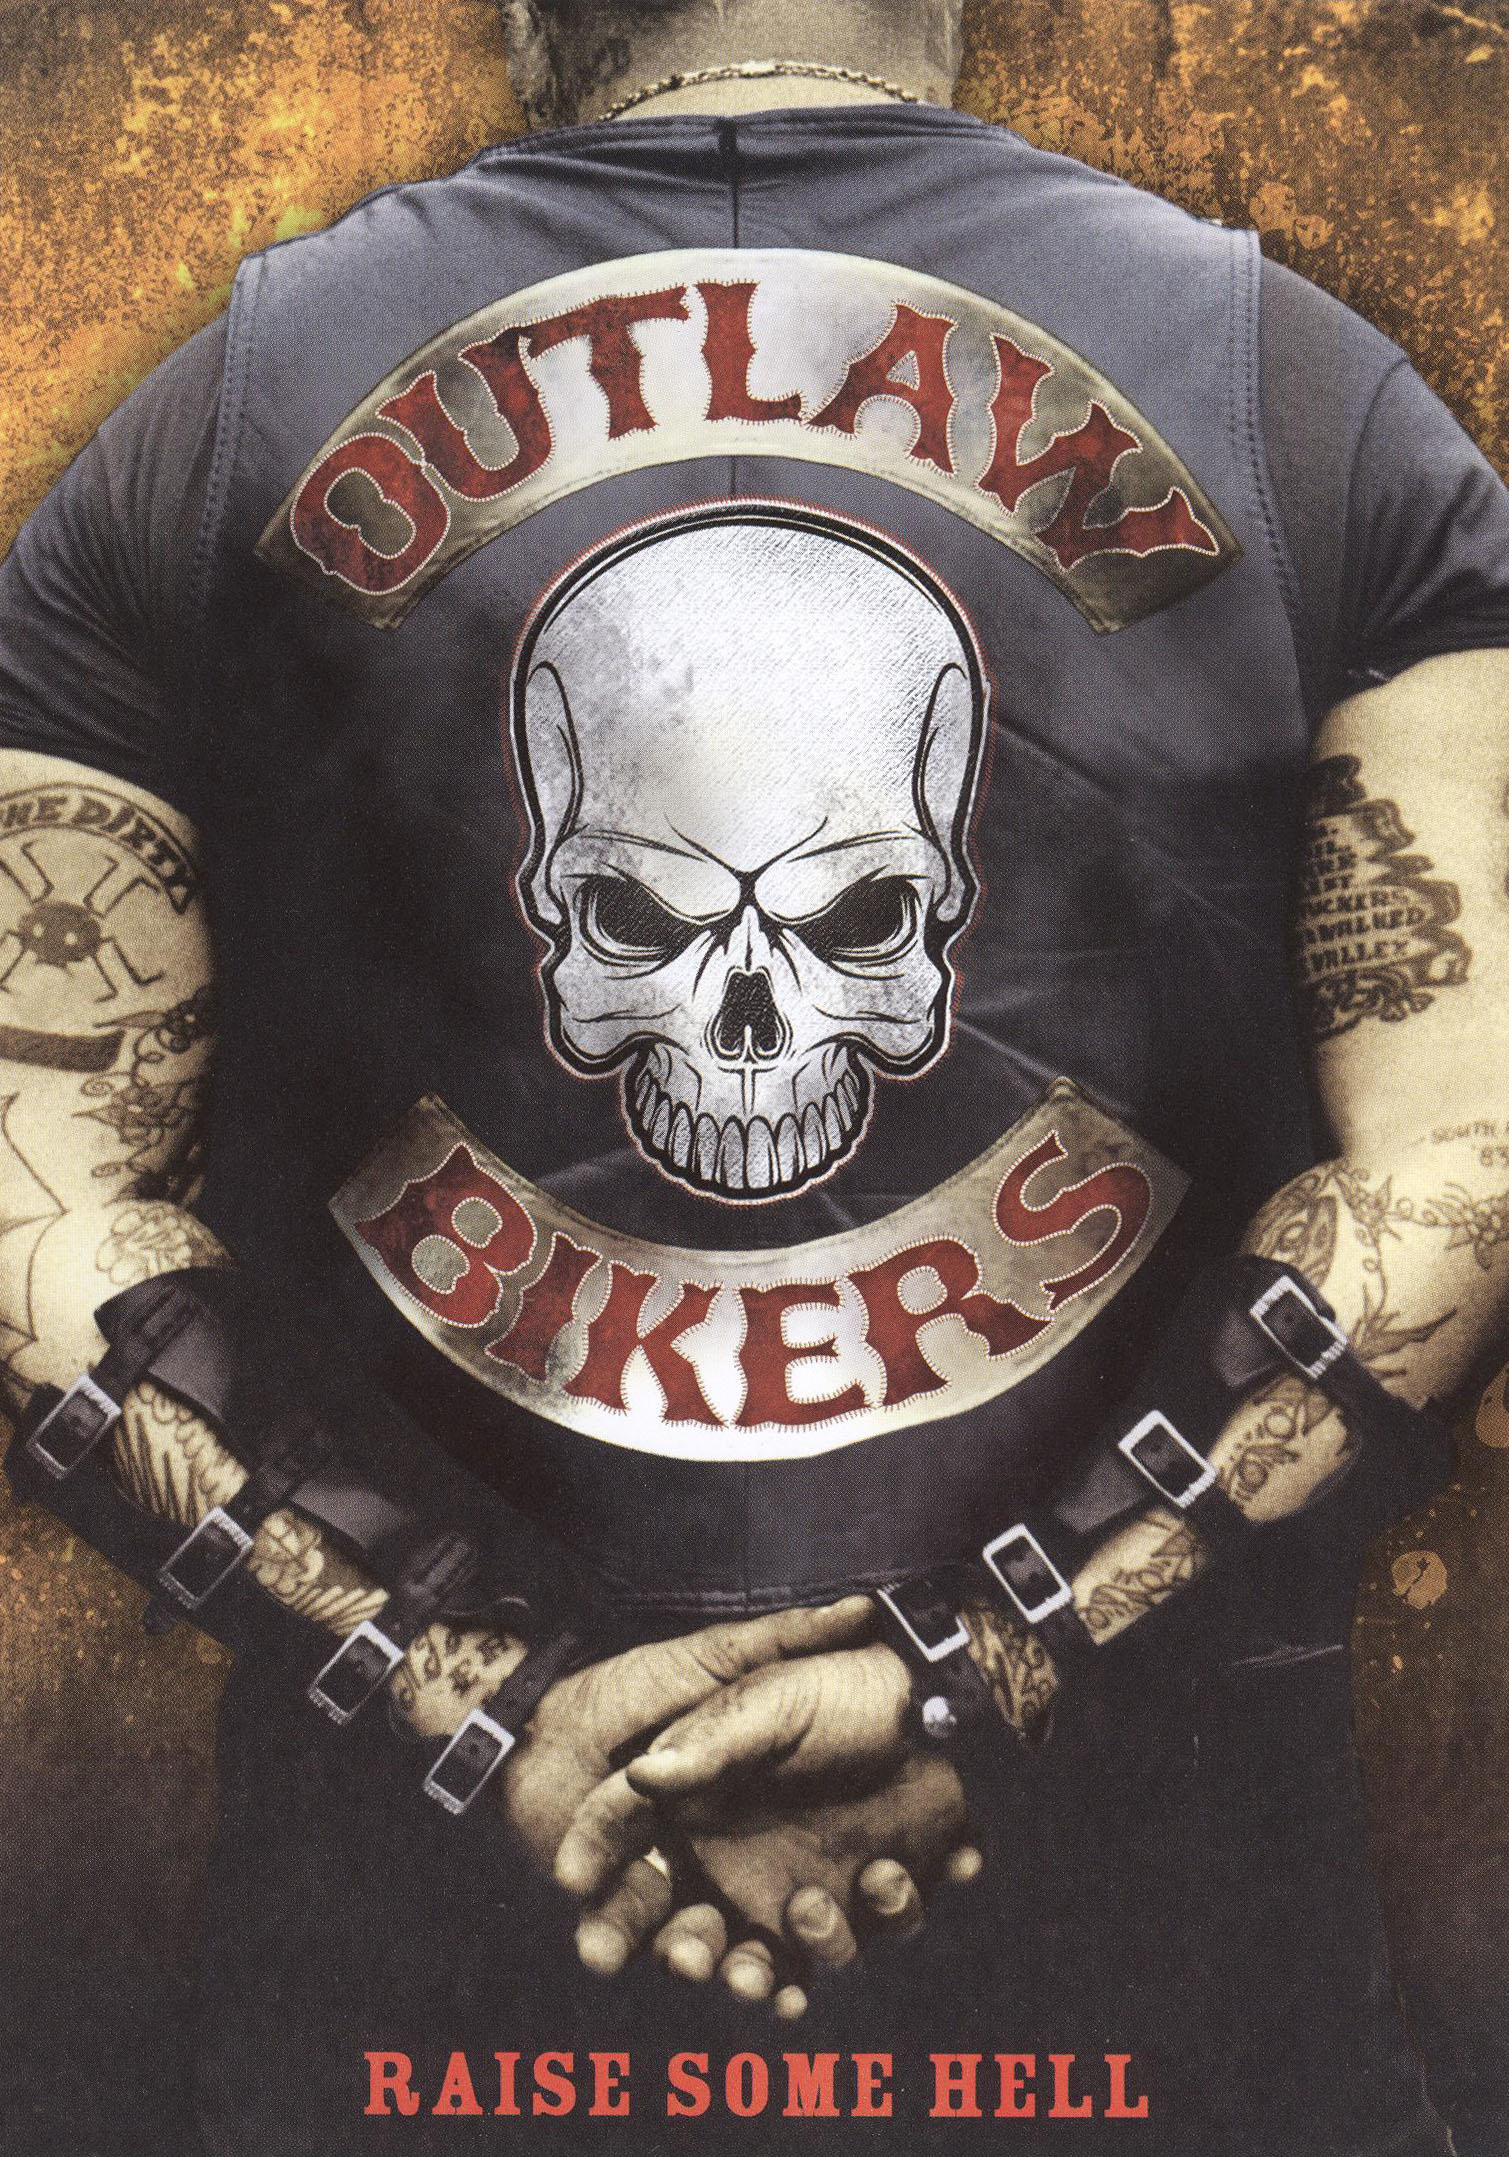 outlaw biker art